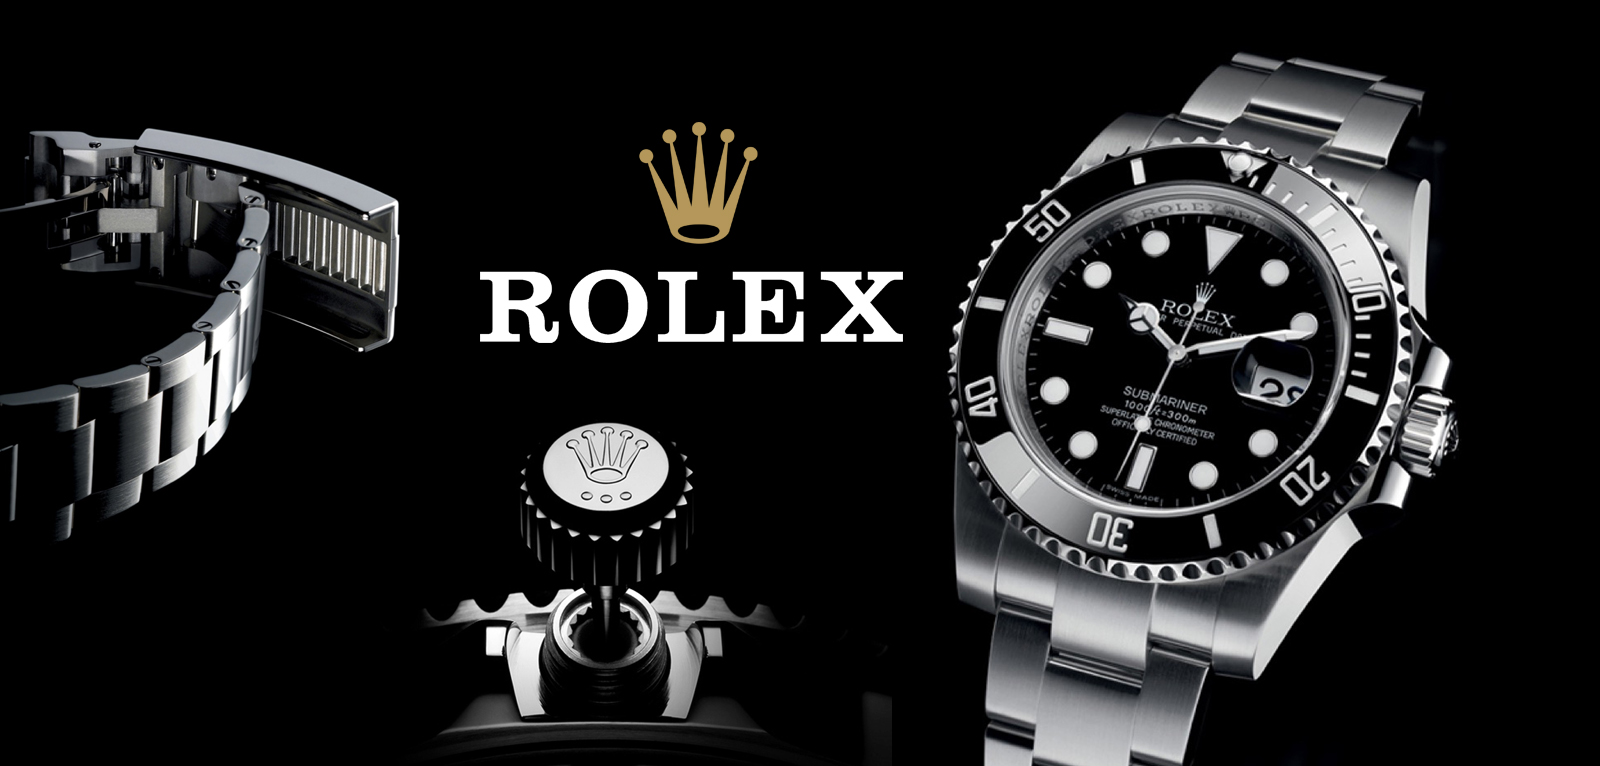 “Rolex”in rəhbəri bahalı saatlara investisiya etməyin təhlükəli olduğunu bildirib